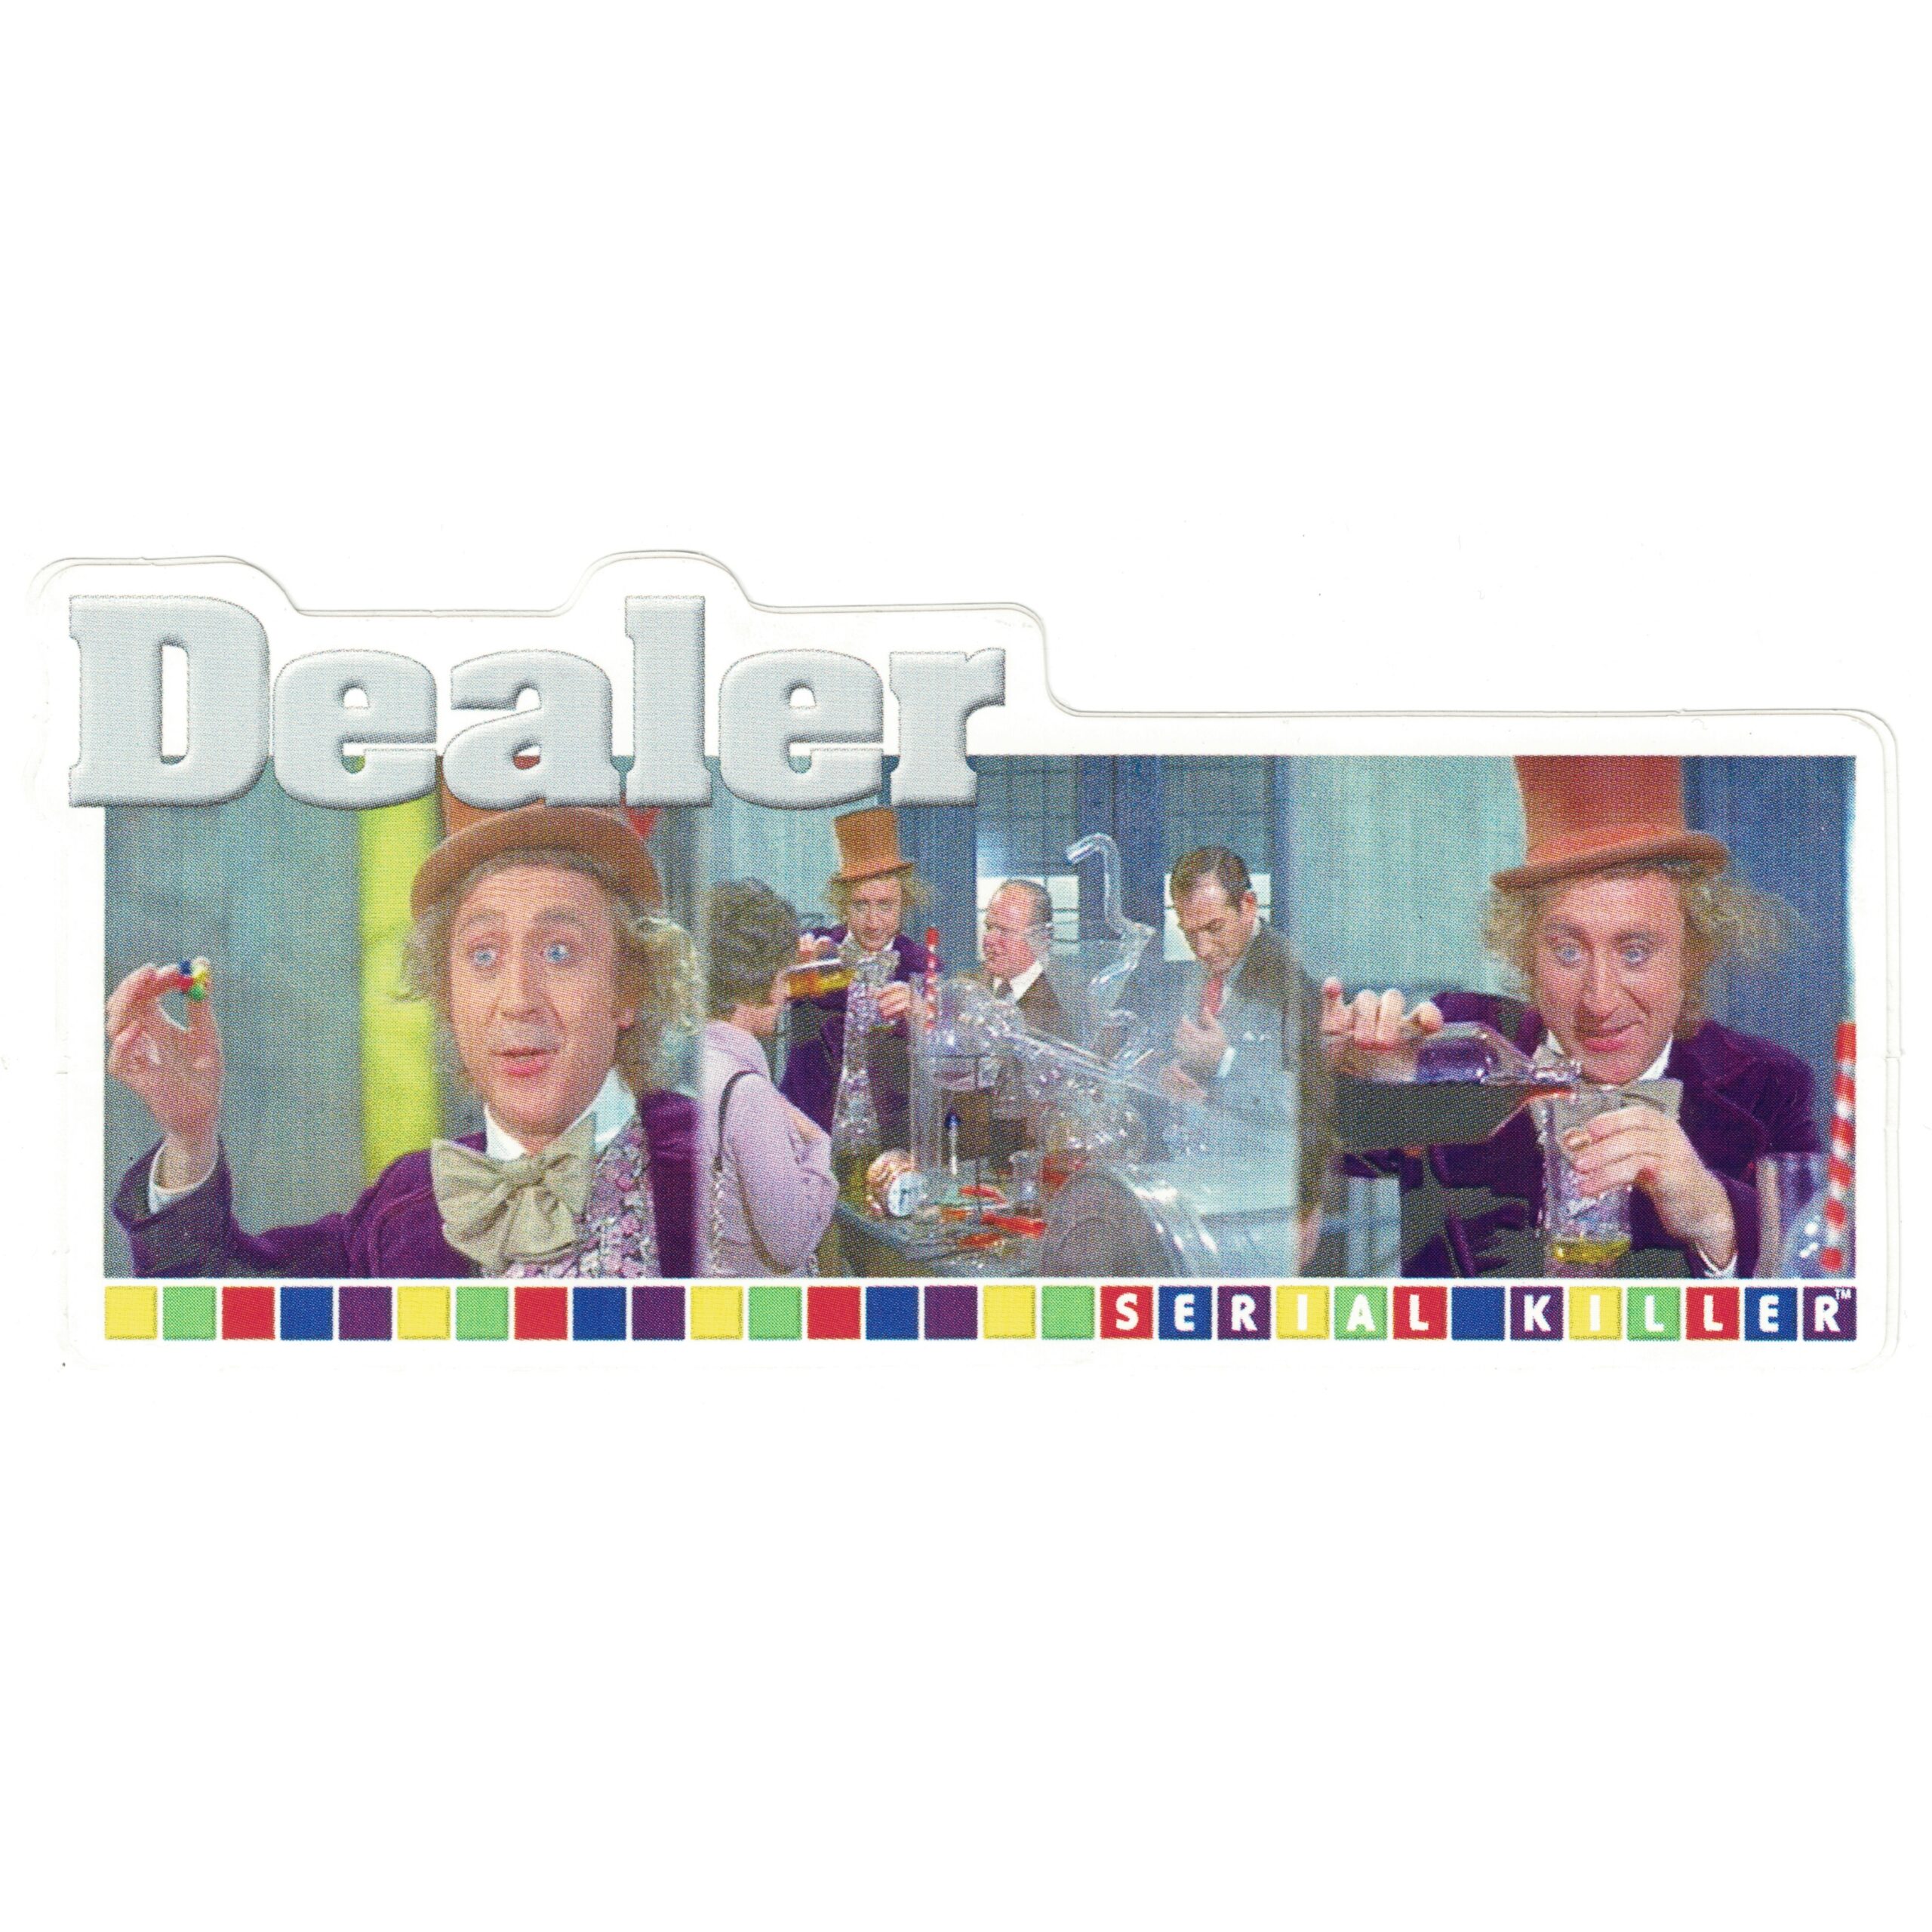 Serial Killer Willy Wonka Dealer